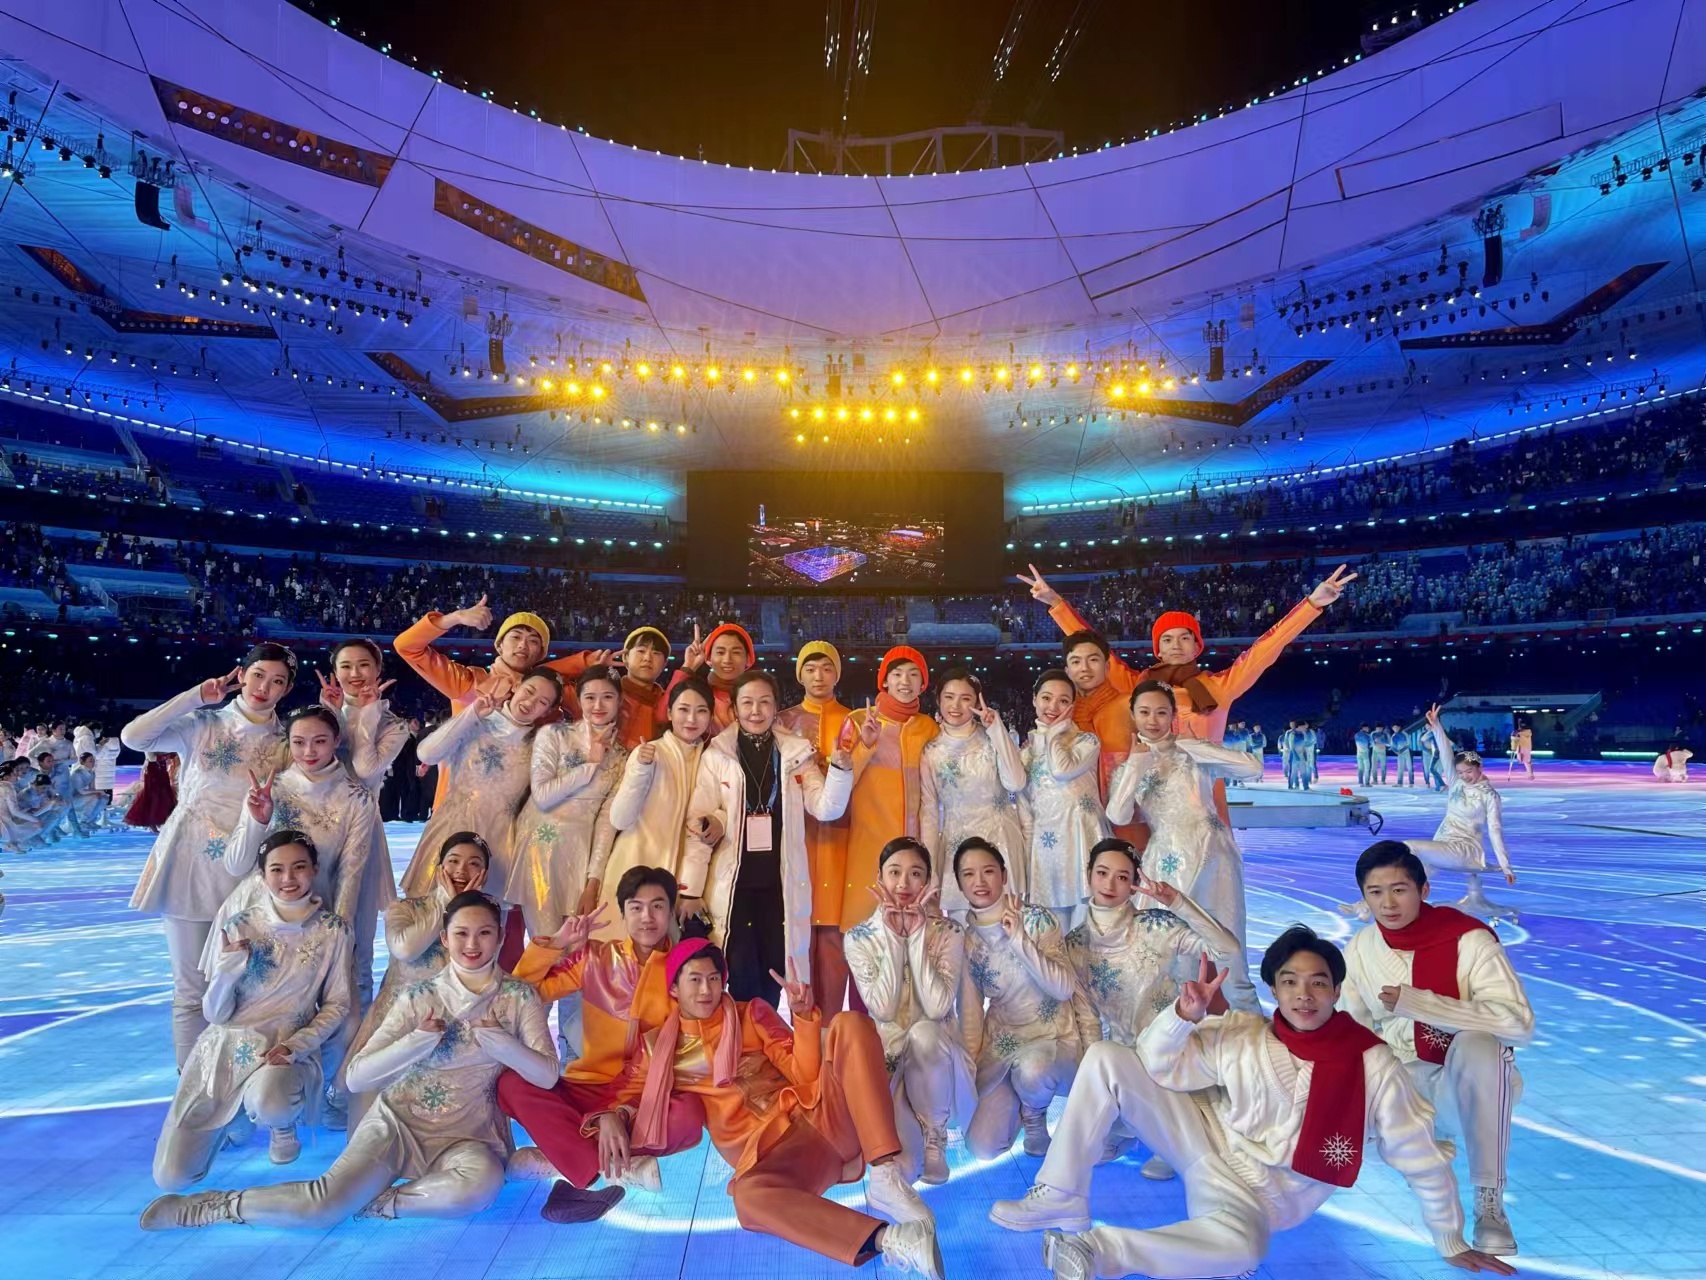 我院辅导员程爱琪作为手语指挥老师并带队23名舞蹈专业听障学生参加2022北京冬残奥会开闭幕式演出